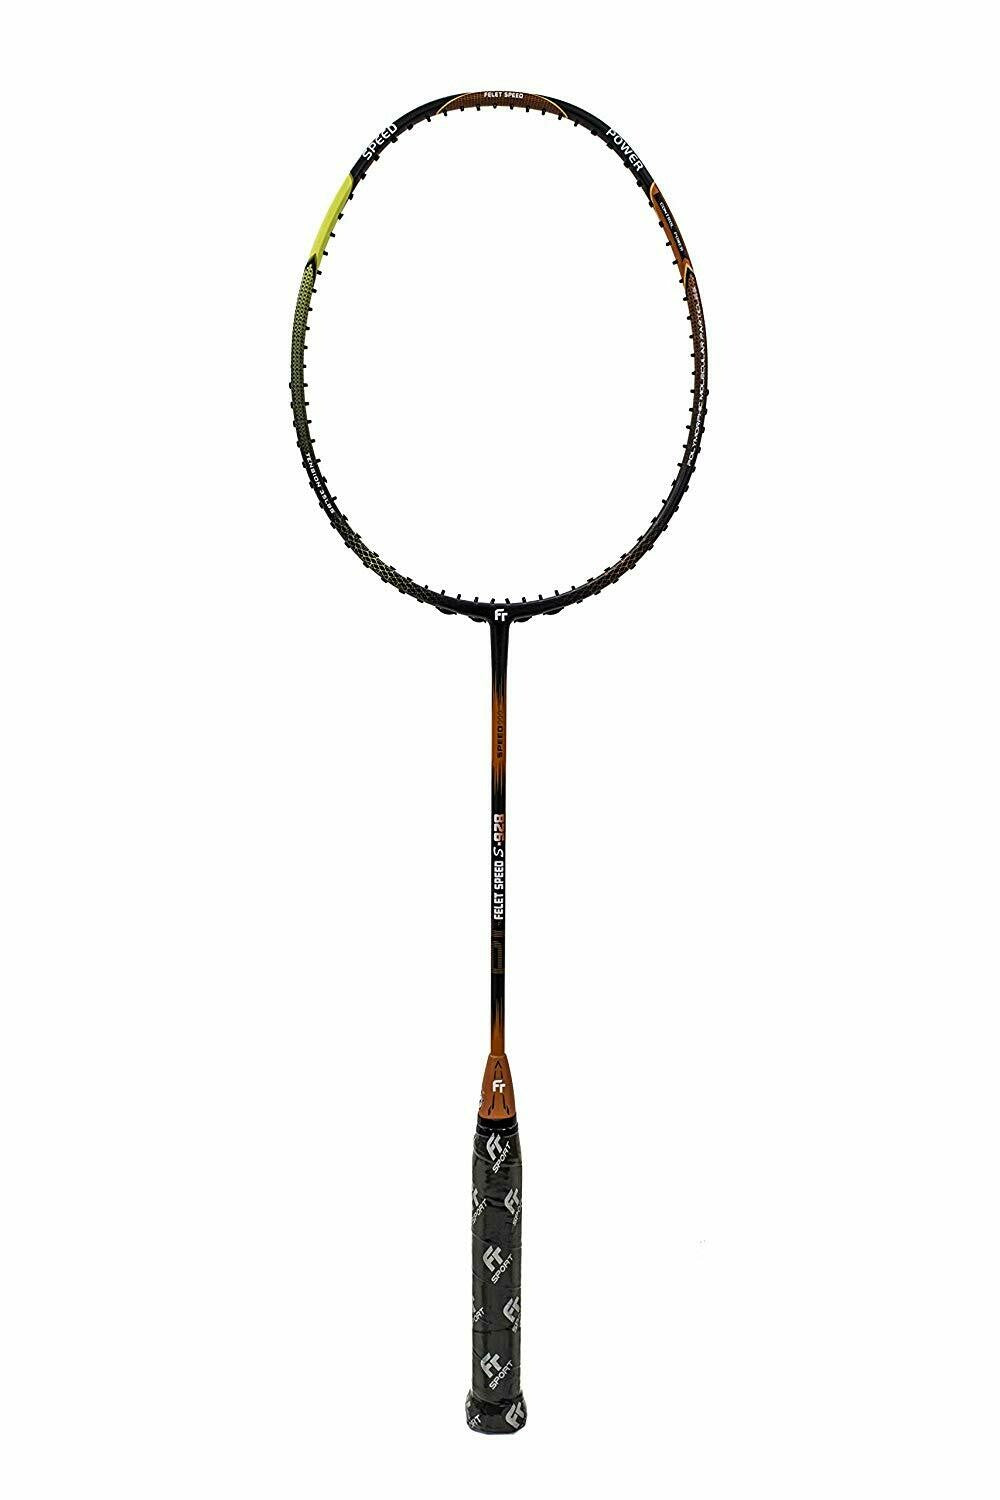 Fleet Felet Speed S-928 Badminton Racket